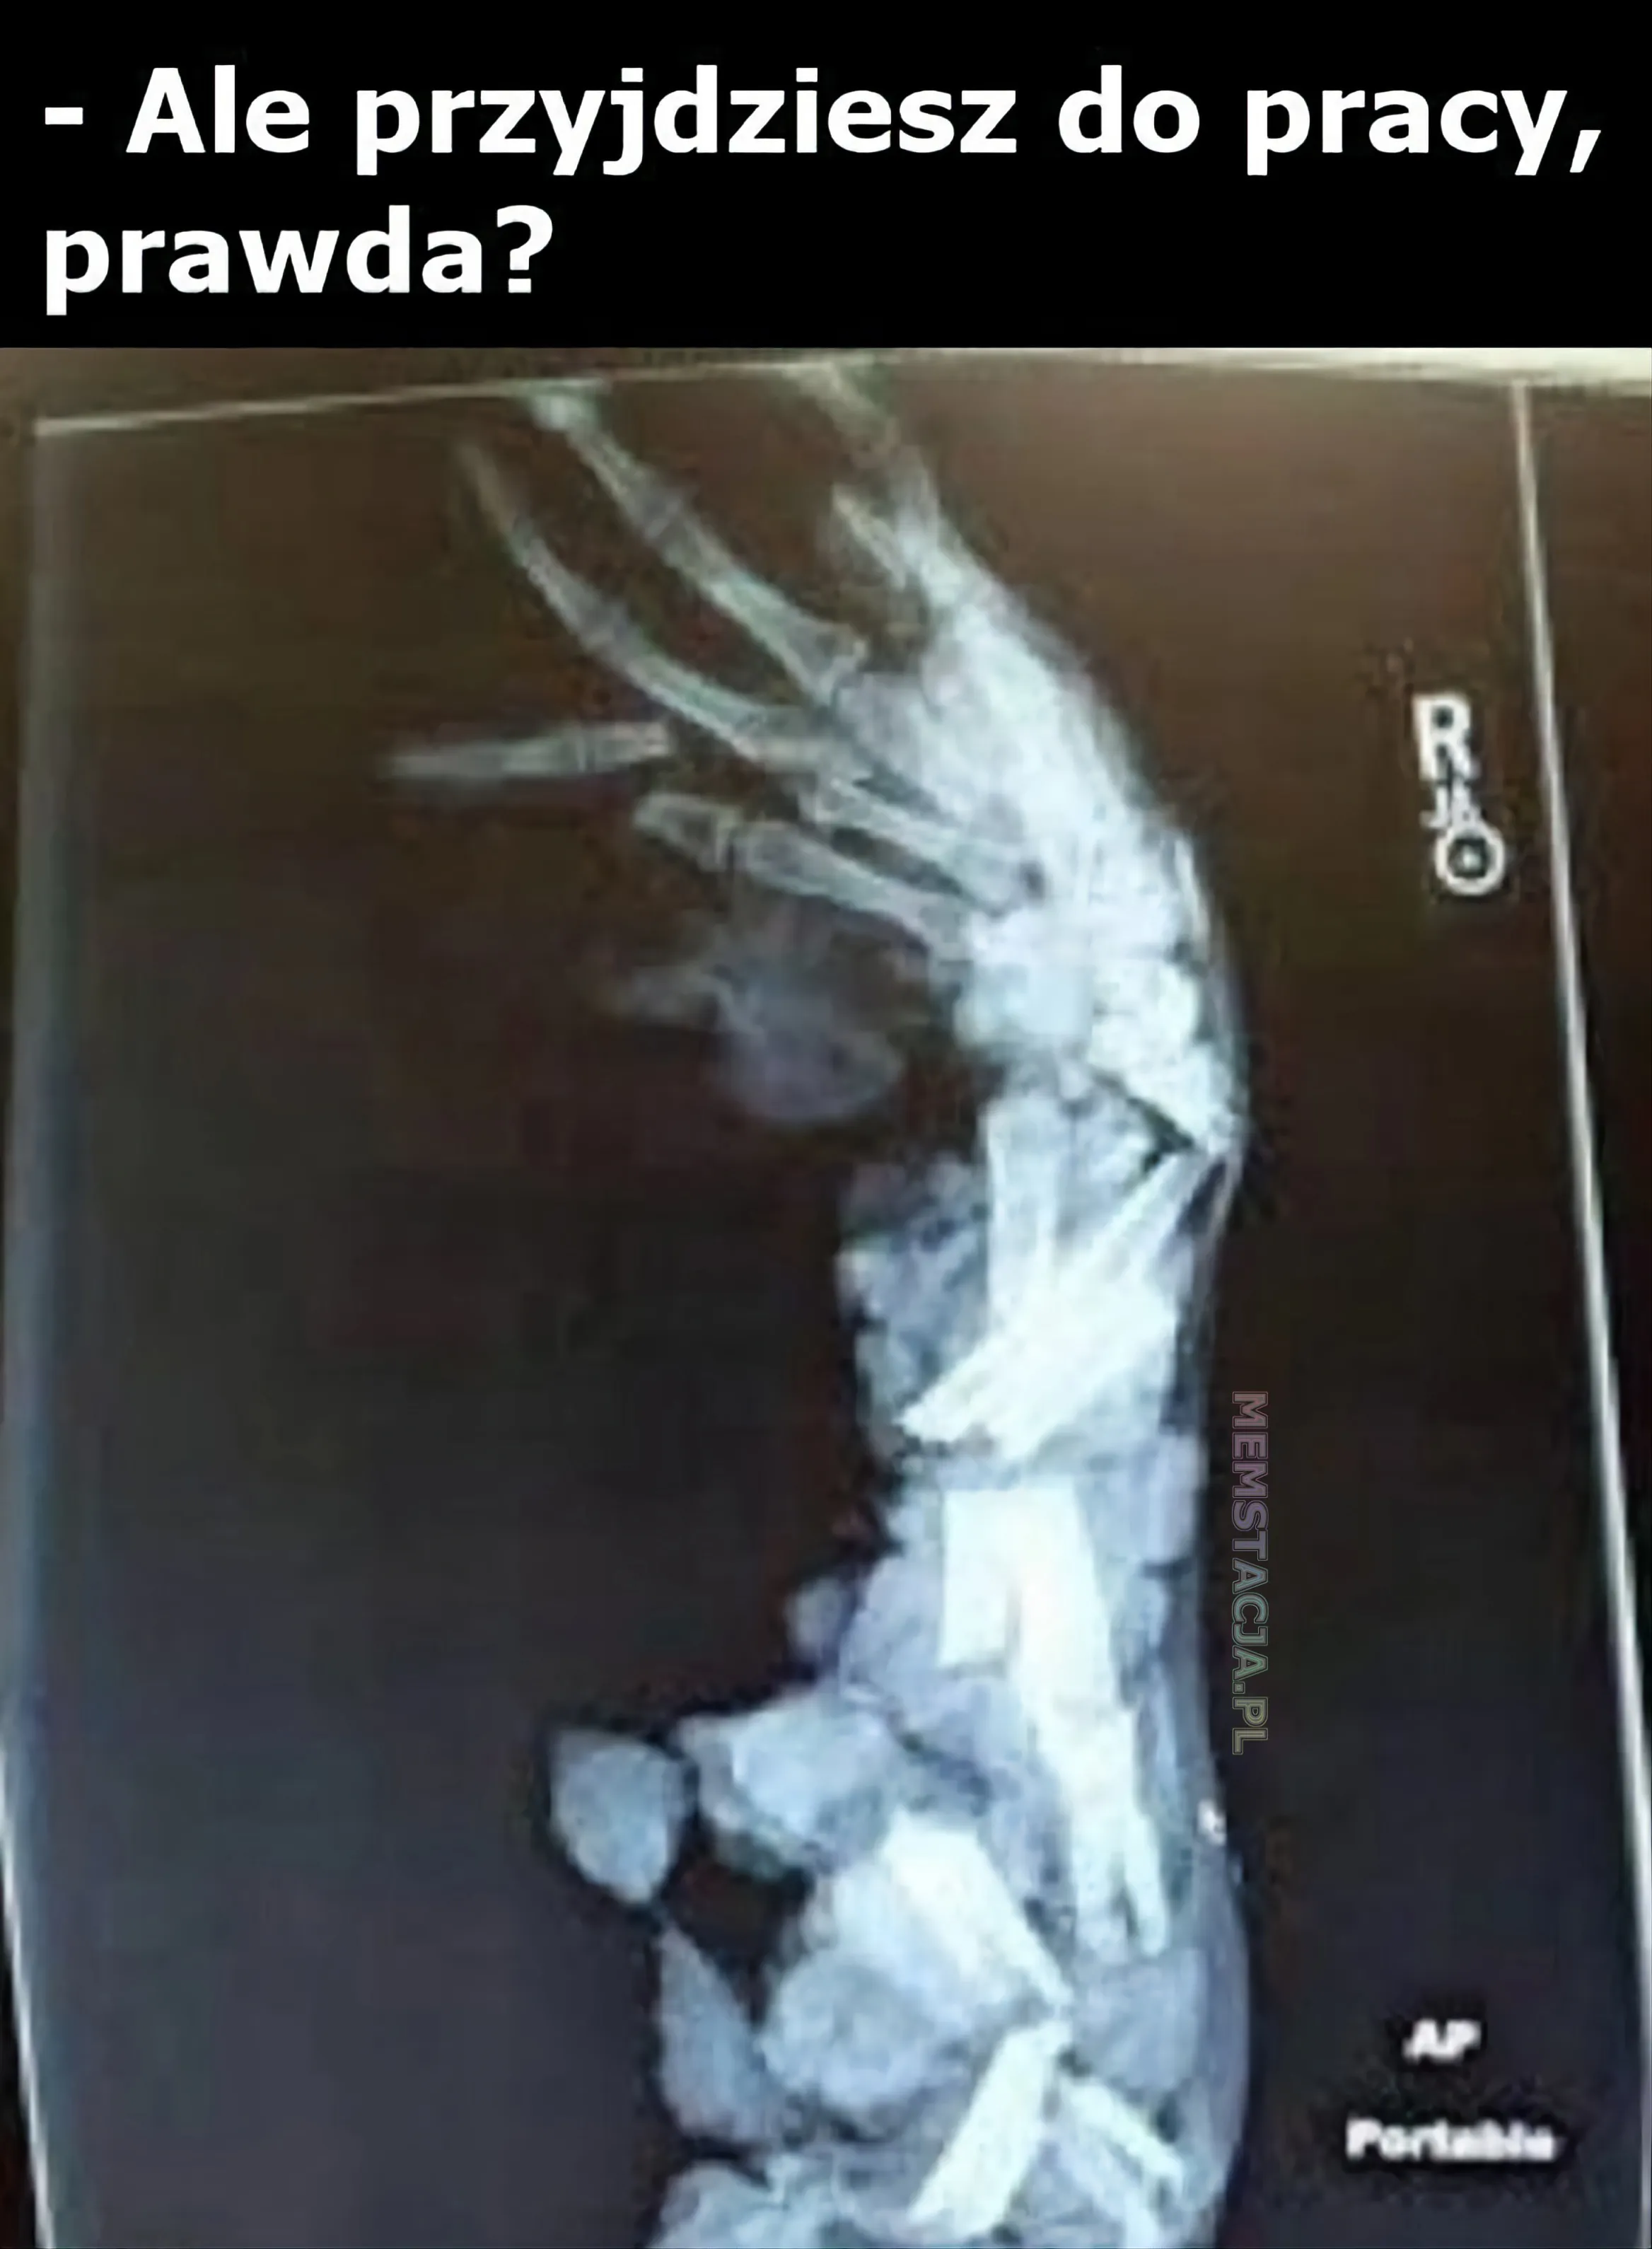 Mem przedstawiający zdjęcie rentgenowskie ręki: 'Ale przyjdziesz do pracy, prawda?'